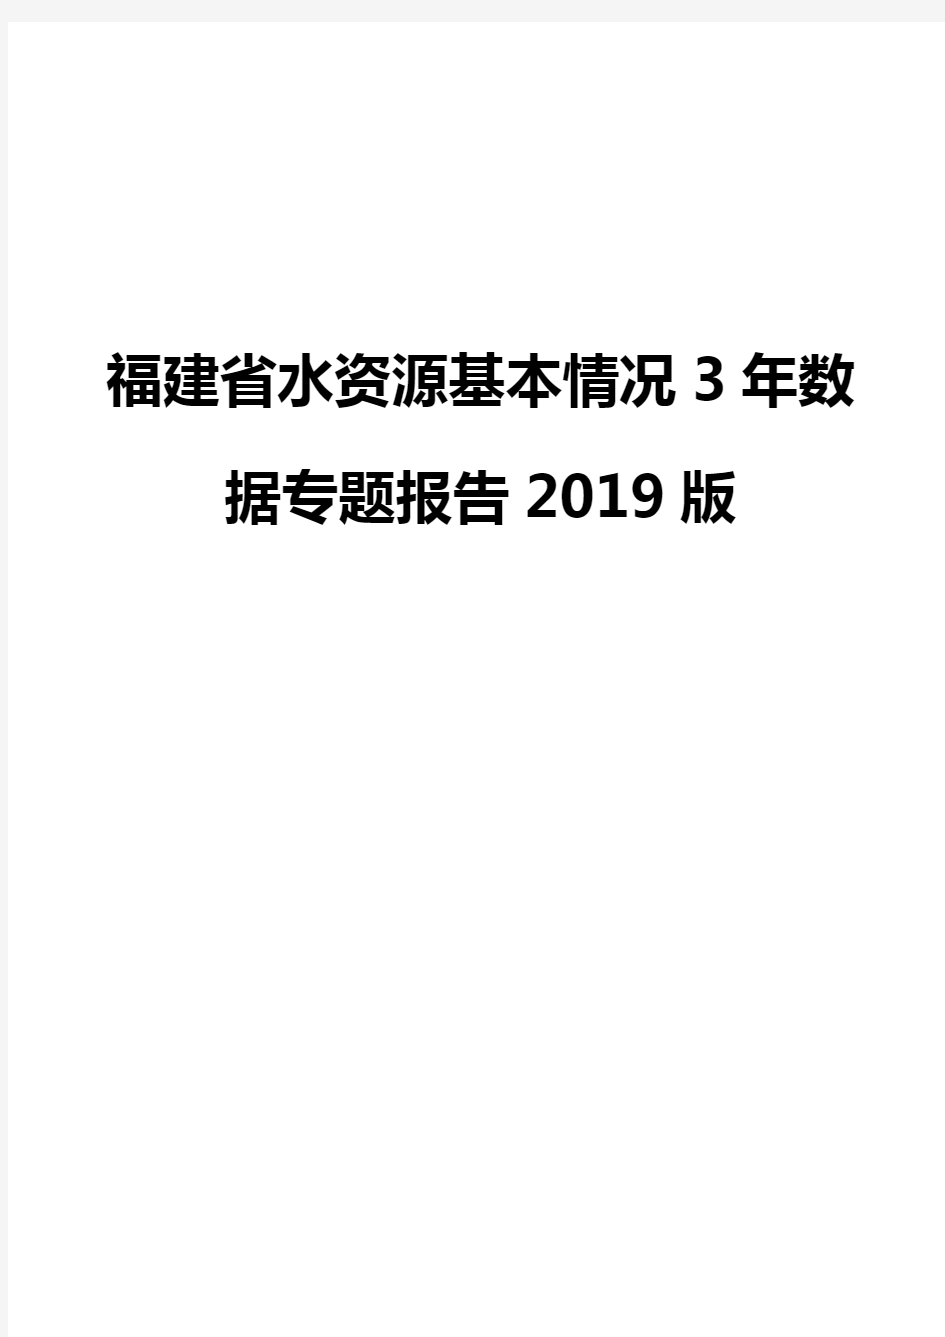 福建省水资源基本情况3年数据专题报告2019版